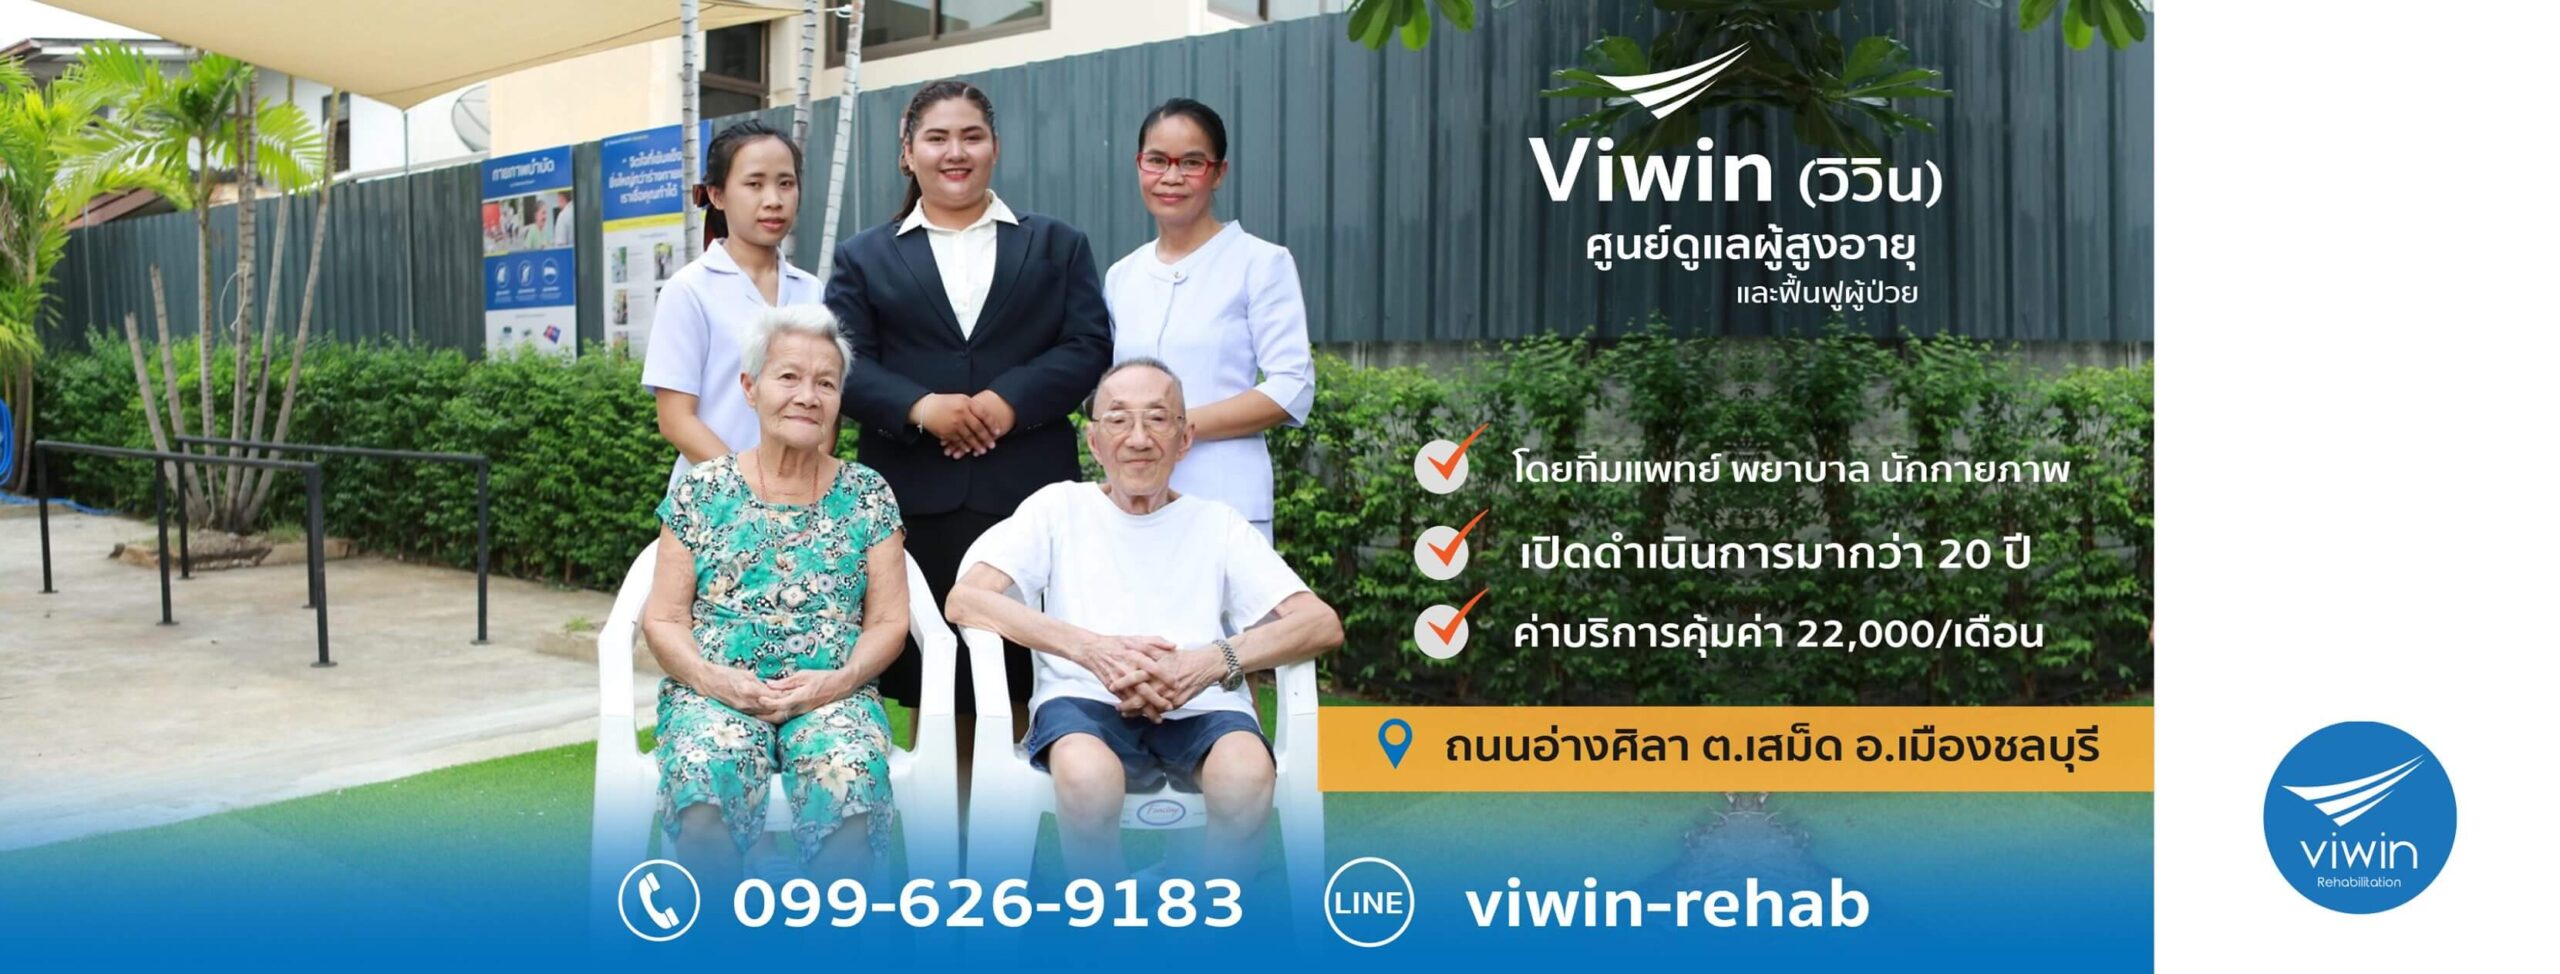 ศูนย์ดูแลผู้สูงอายุและฟื้นฟูผู้ป่วย Viwin (วิวิน)